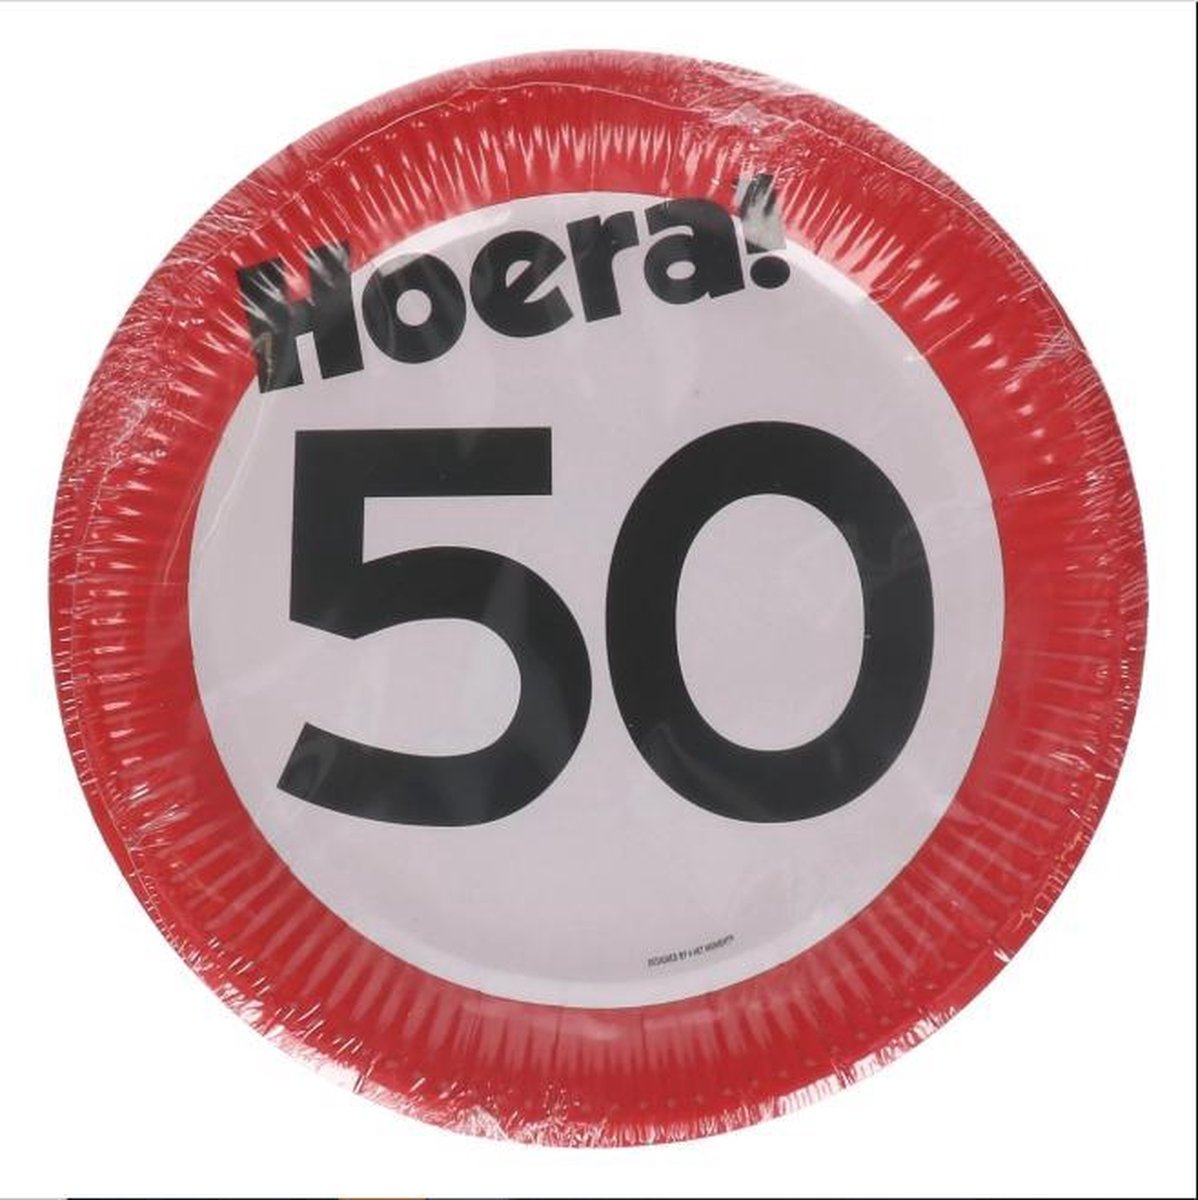 Kartonnen Bordjes hoera 50 jaar 23cm 8 st - Wegwerp borden - Feest/verjaardag/BBQ borden